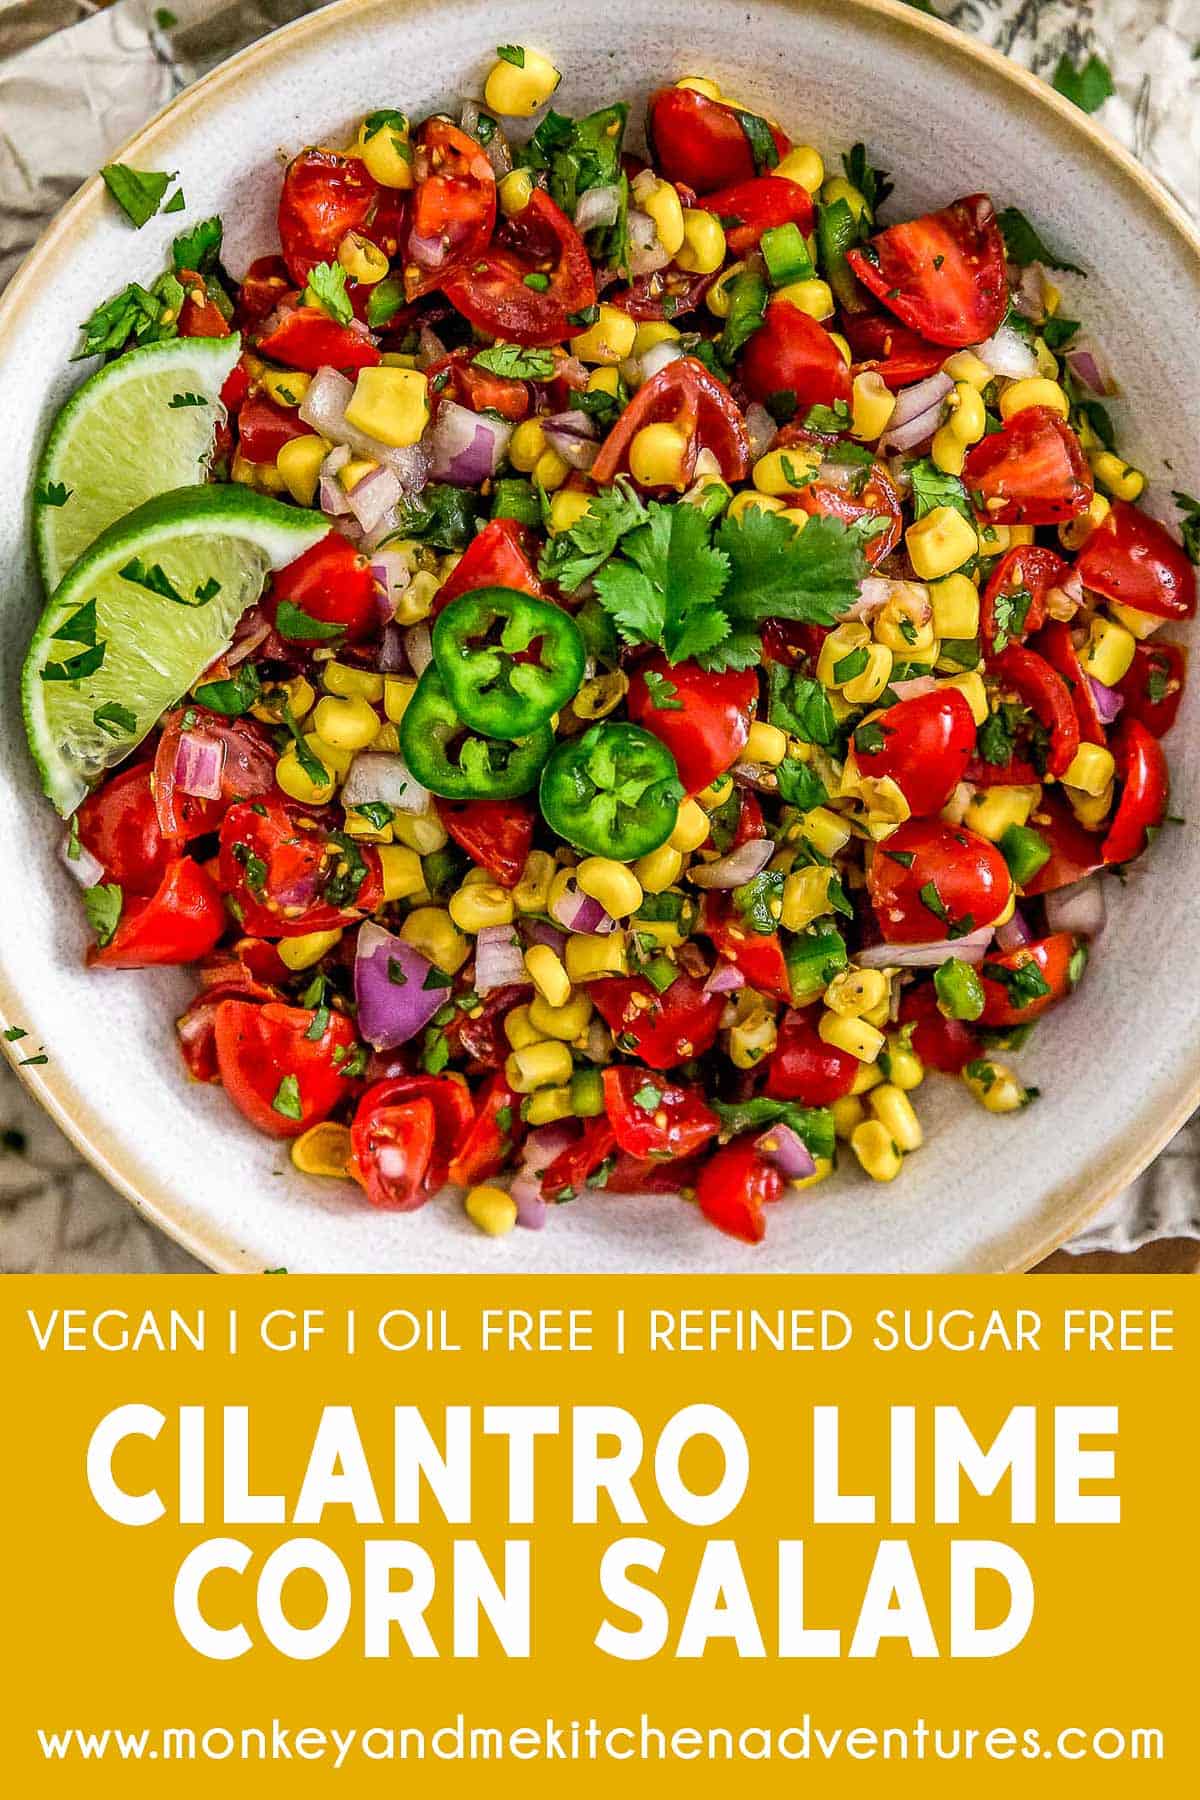 Cilantro Lime Corn Salad with text description